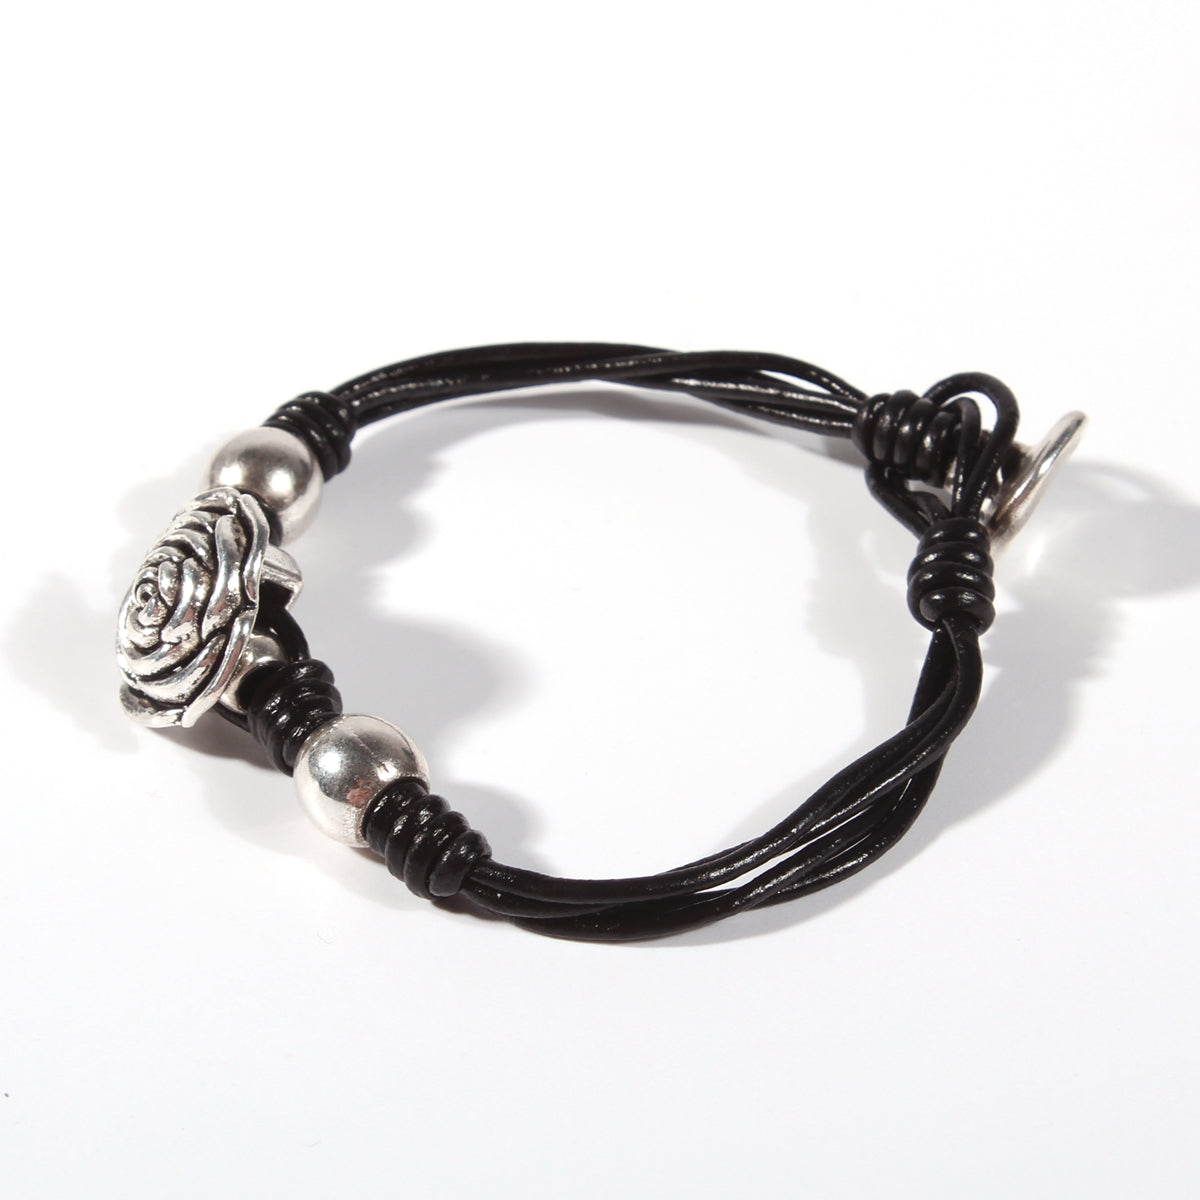 Genuine leather handmade women's bracelet MBR-09